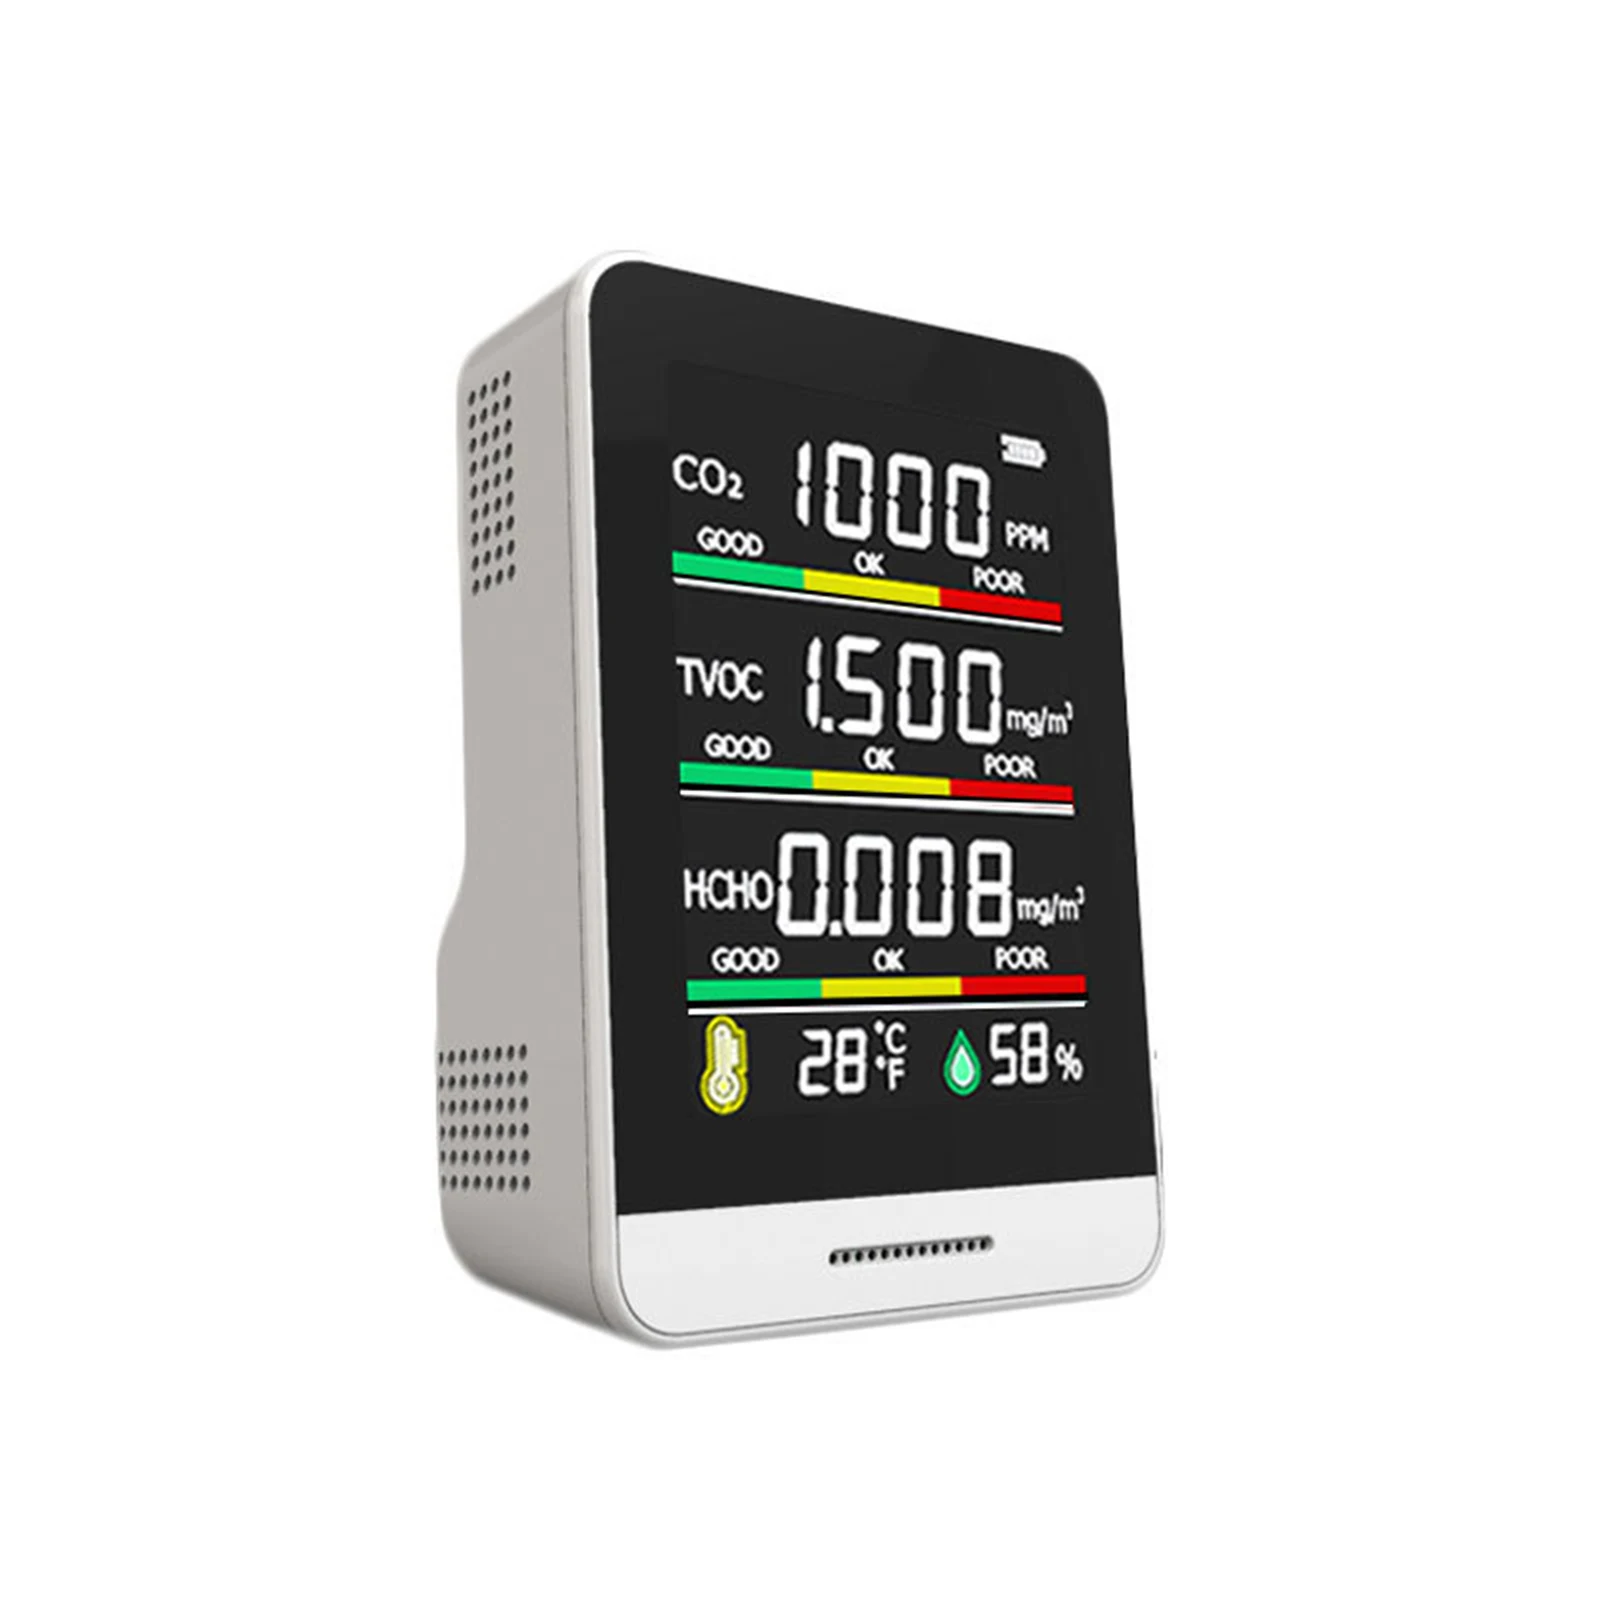 

USB Перезаряжаемый тестер качества воздуха, мониторинг CO2 / TVOC /HCHO/температуры/влажности, Интеллектуальный будильник, термометр, гигрометр